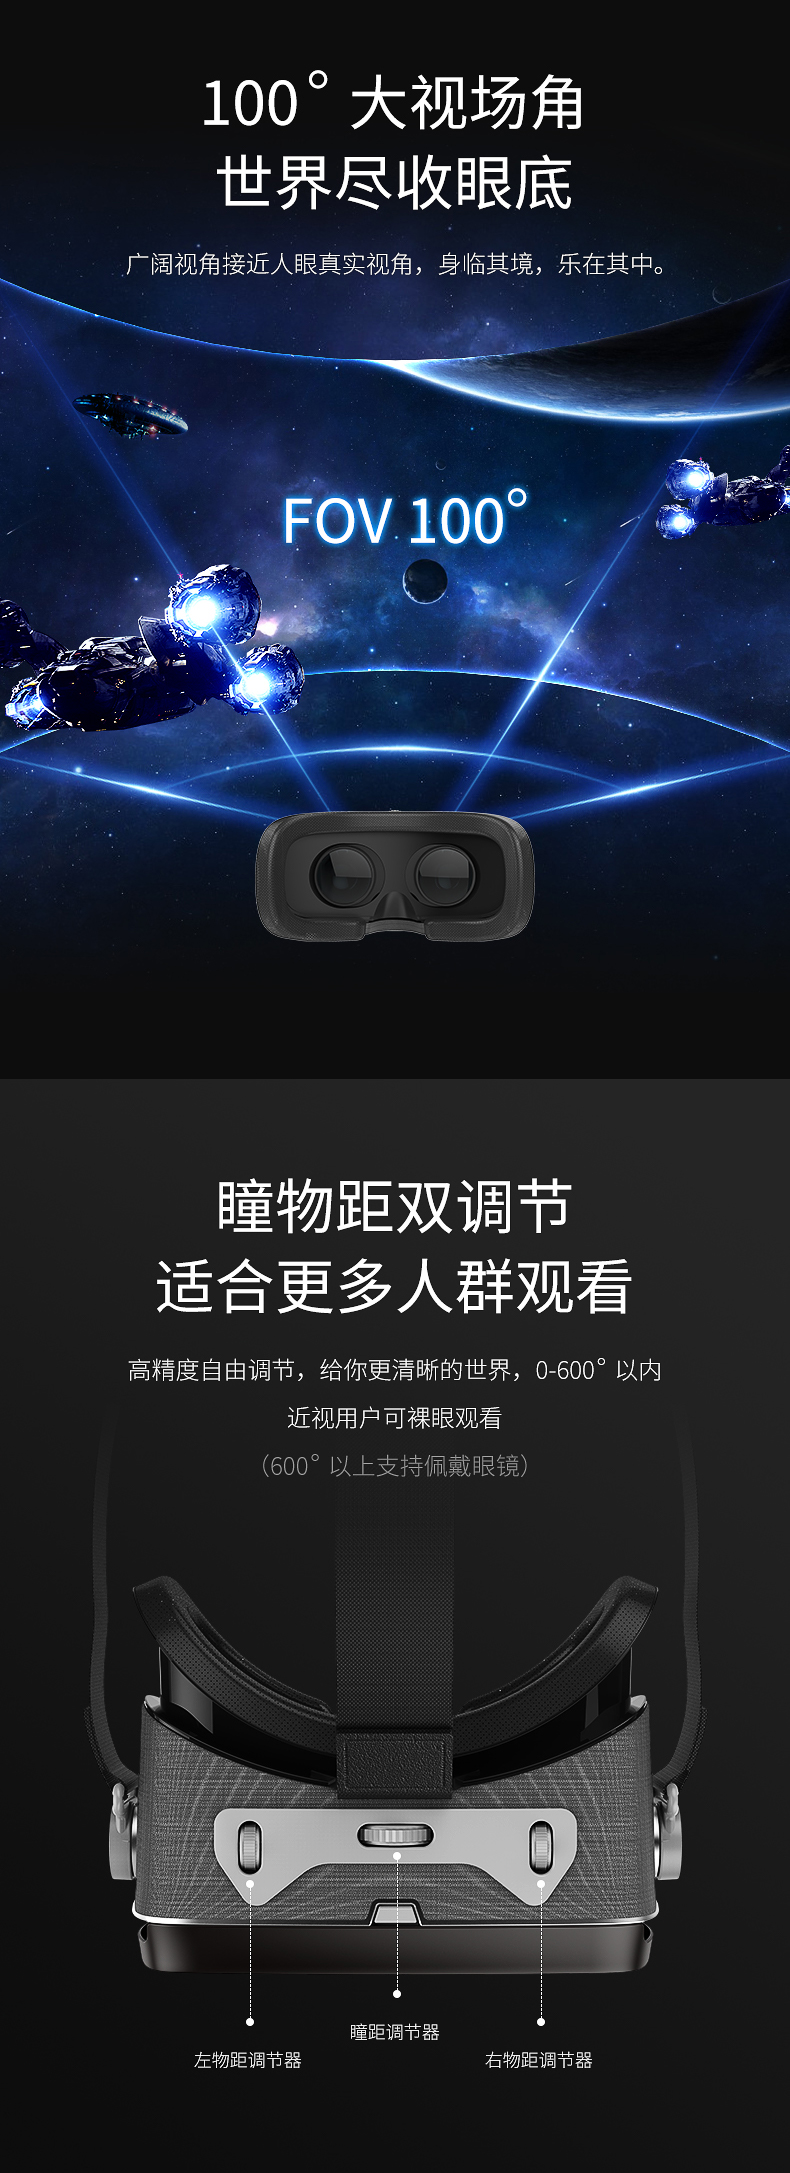 天翼云VR线下体验免费试用,评测